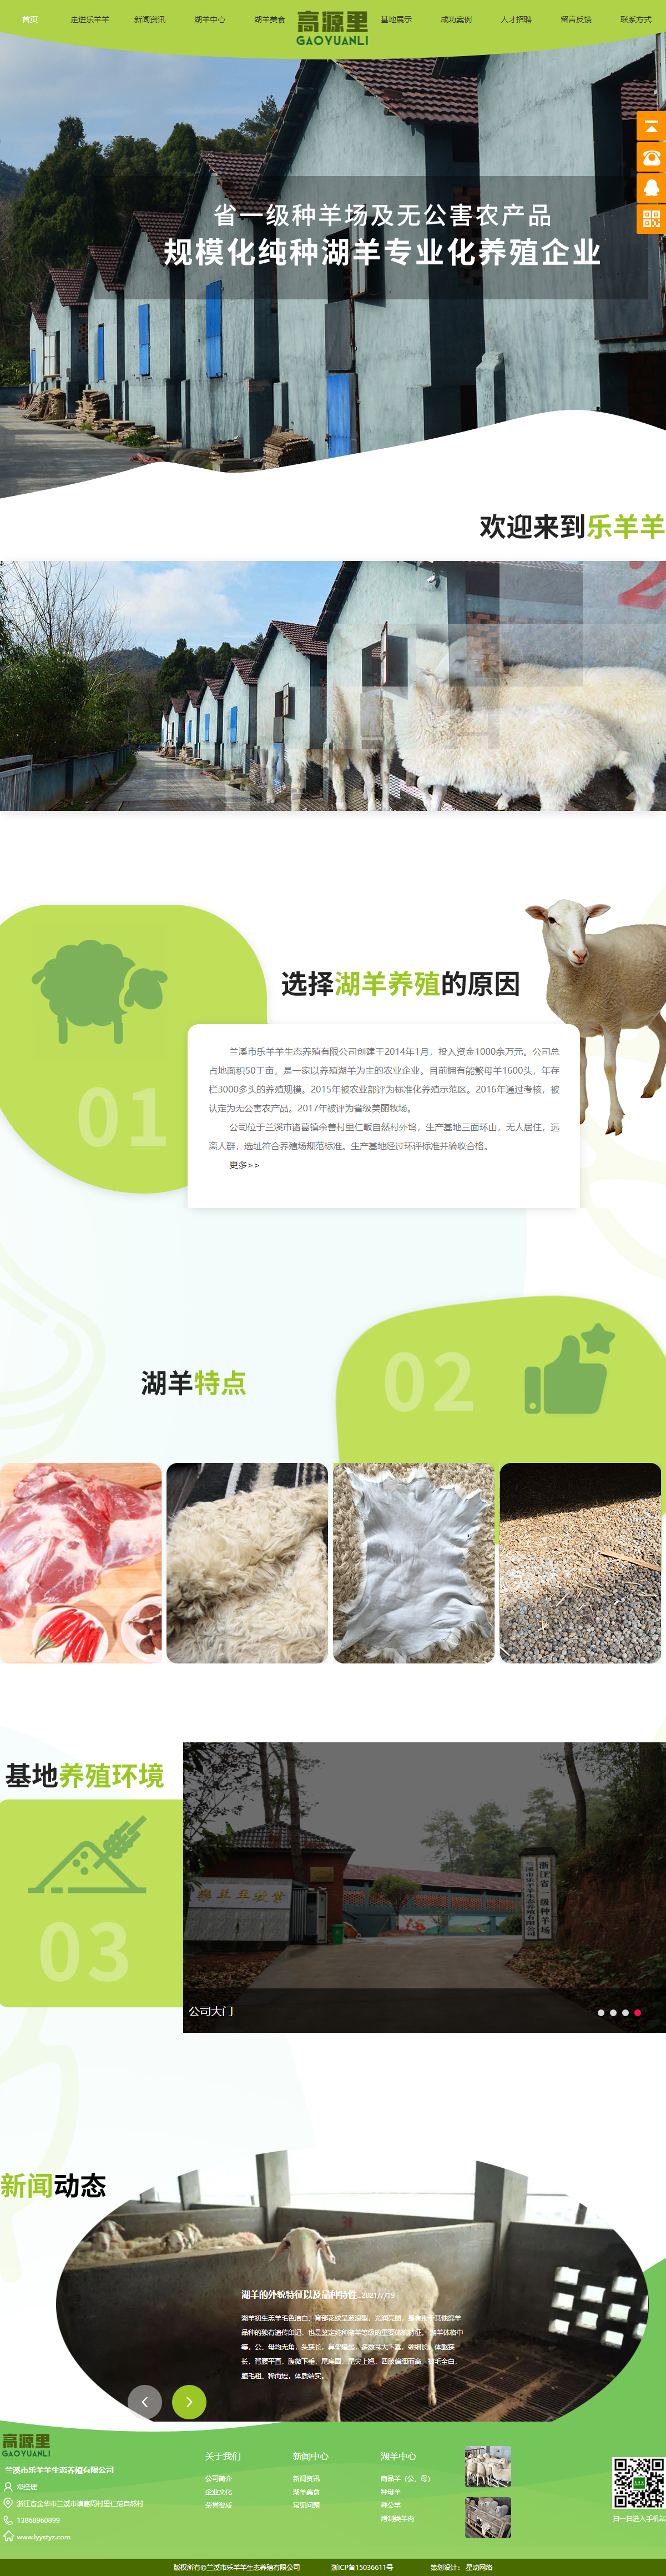 兰溪市乐羊羊生态养殖有限公司网站案例